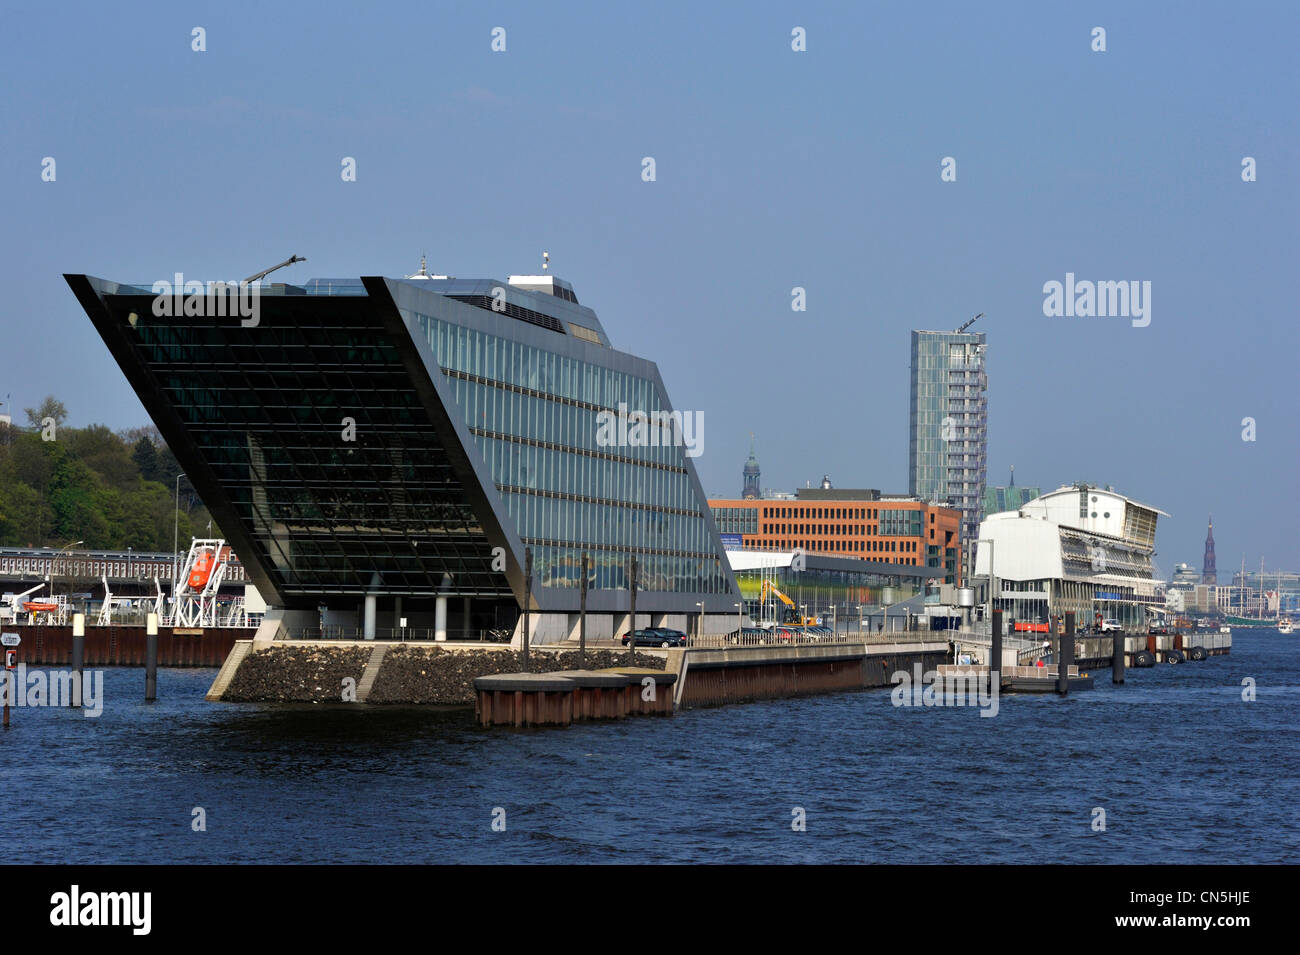 Germania, Amburgo, capitale verde europea 2011, la costruzione di uffici Dockland dagli architetti di impresa hadi Teherani Foto Stock